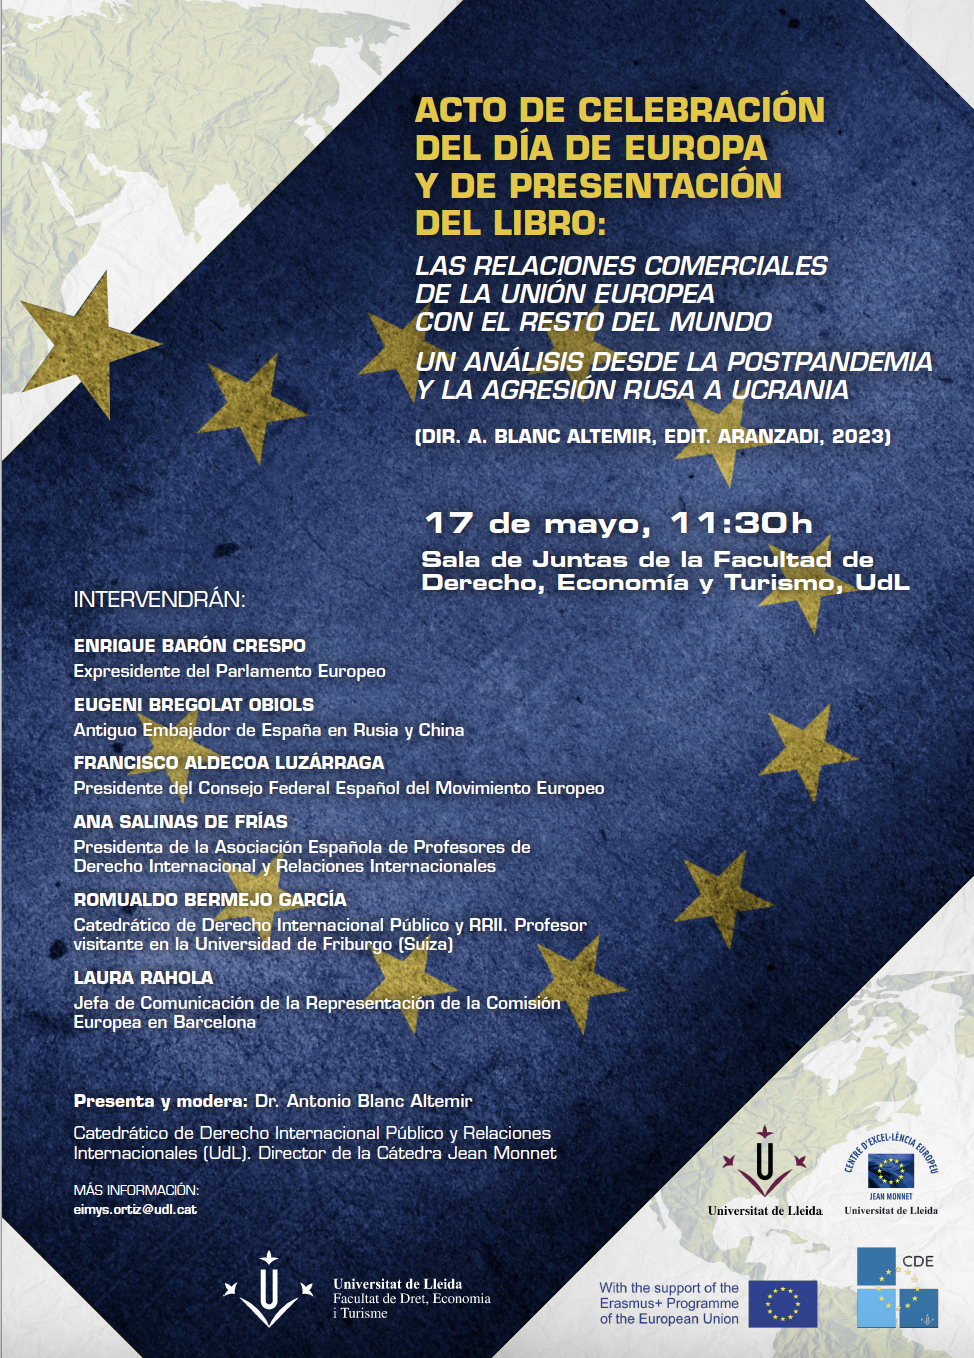 Acto de celebración del Dia de Europa y de presentación del libro Las relaciones comerciales de la Unión Europea con el resto del mundo